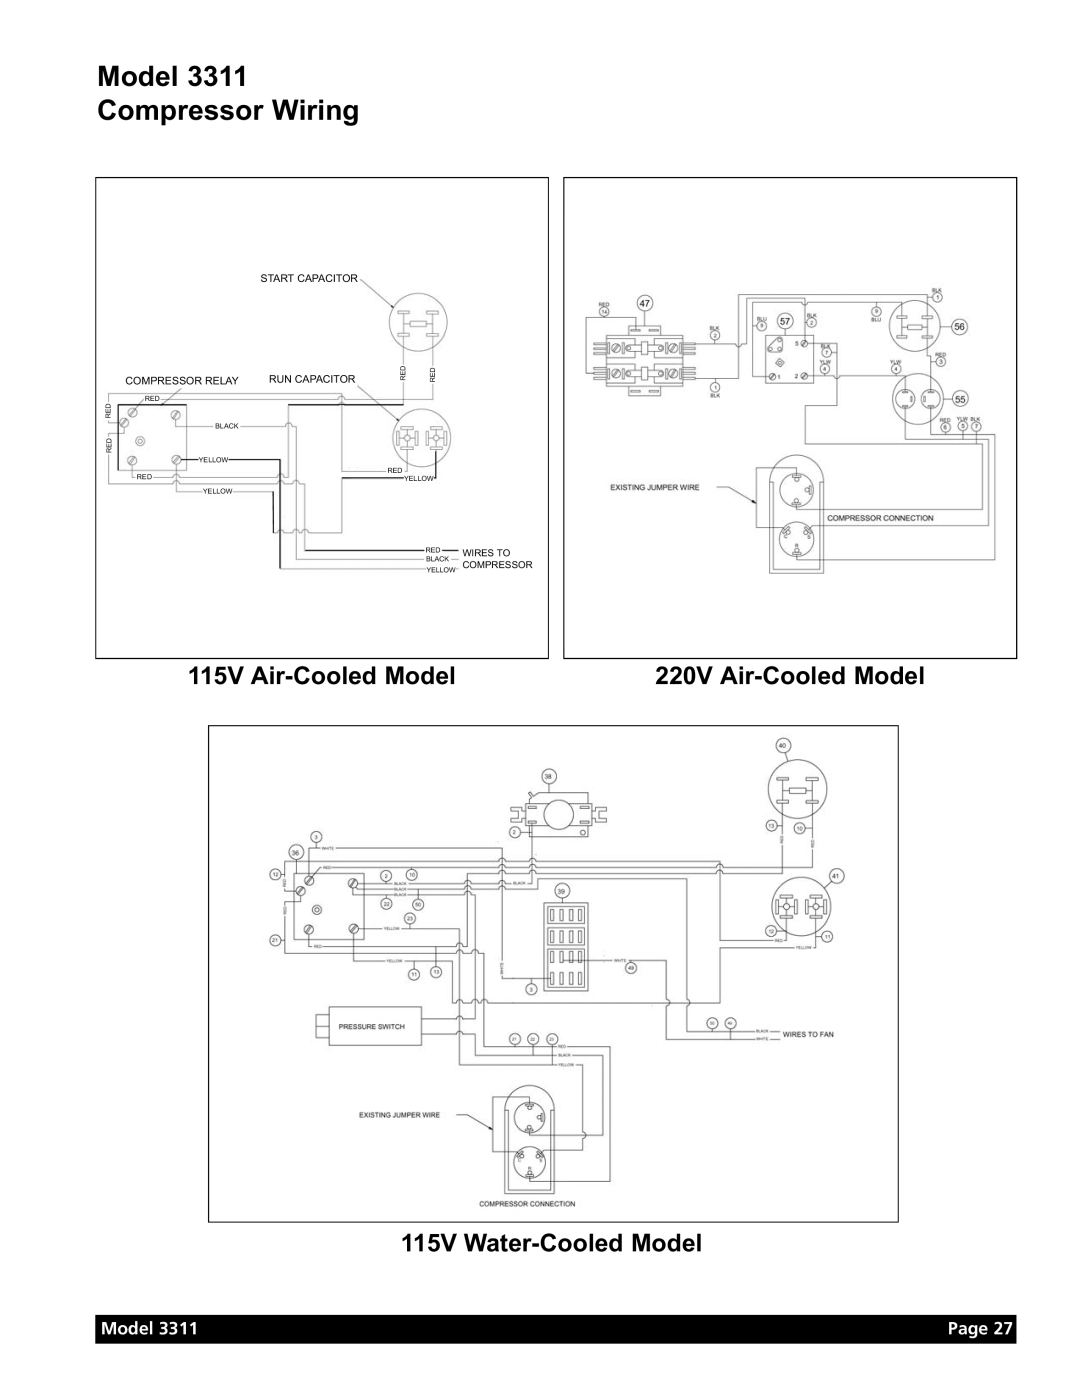 Grindmaster Model 3311 Compressor Wiring, 115V Air-Cooled Model, 115V Water-Cooled Model, 220V Air-Cooled Model, Page 